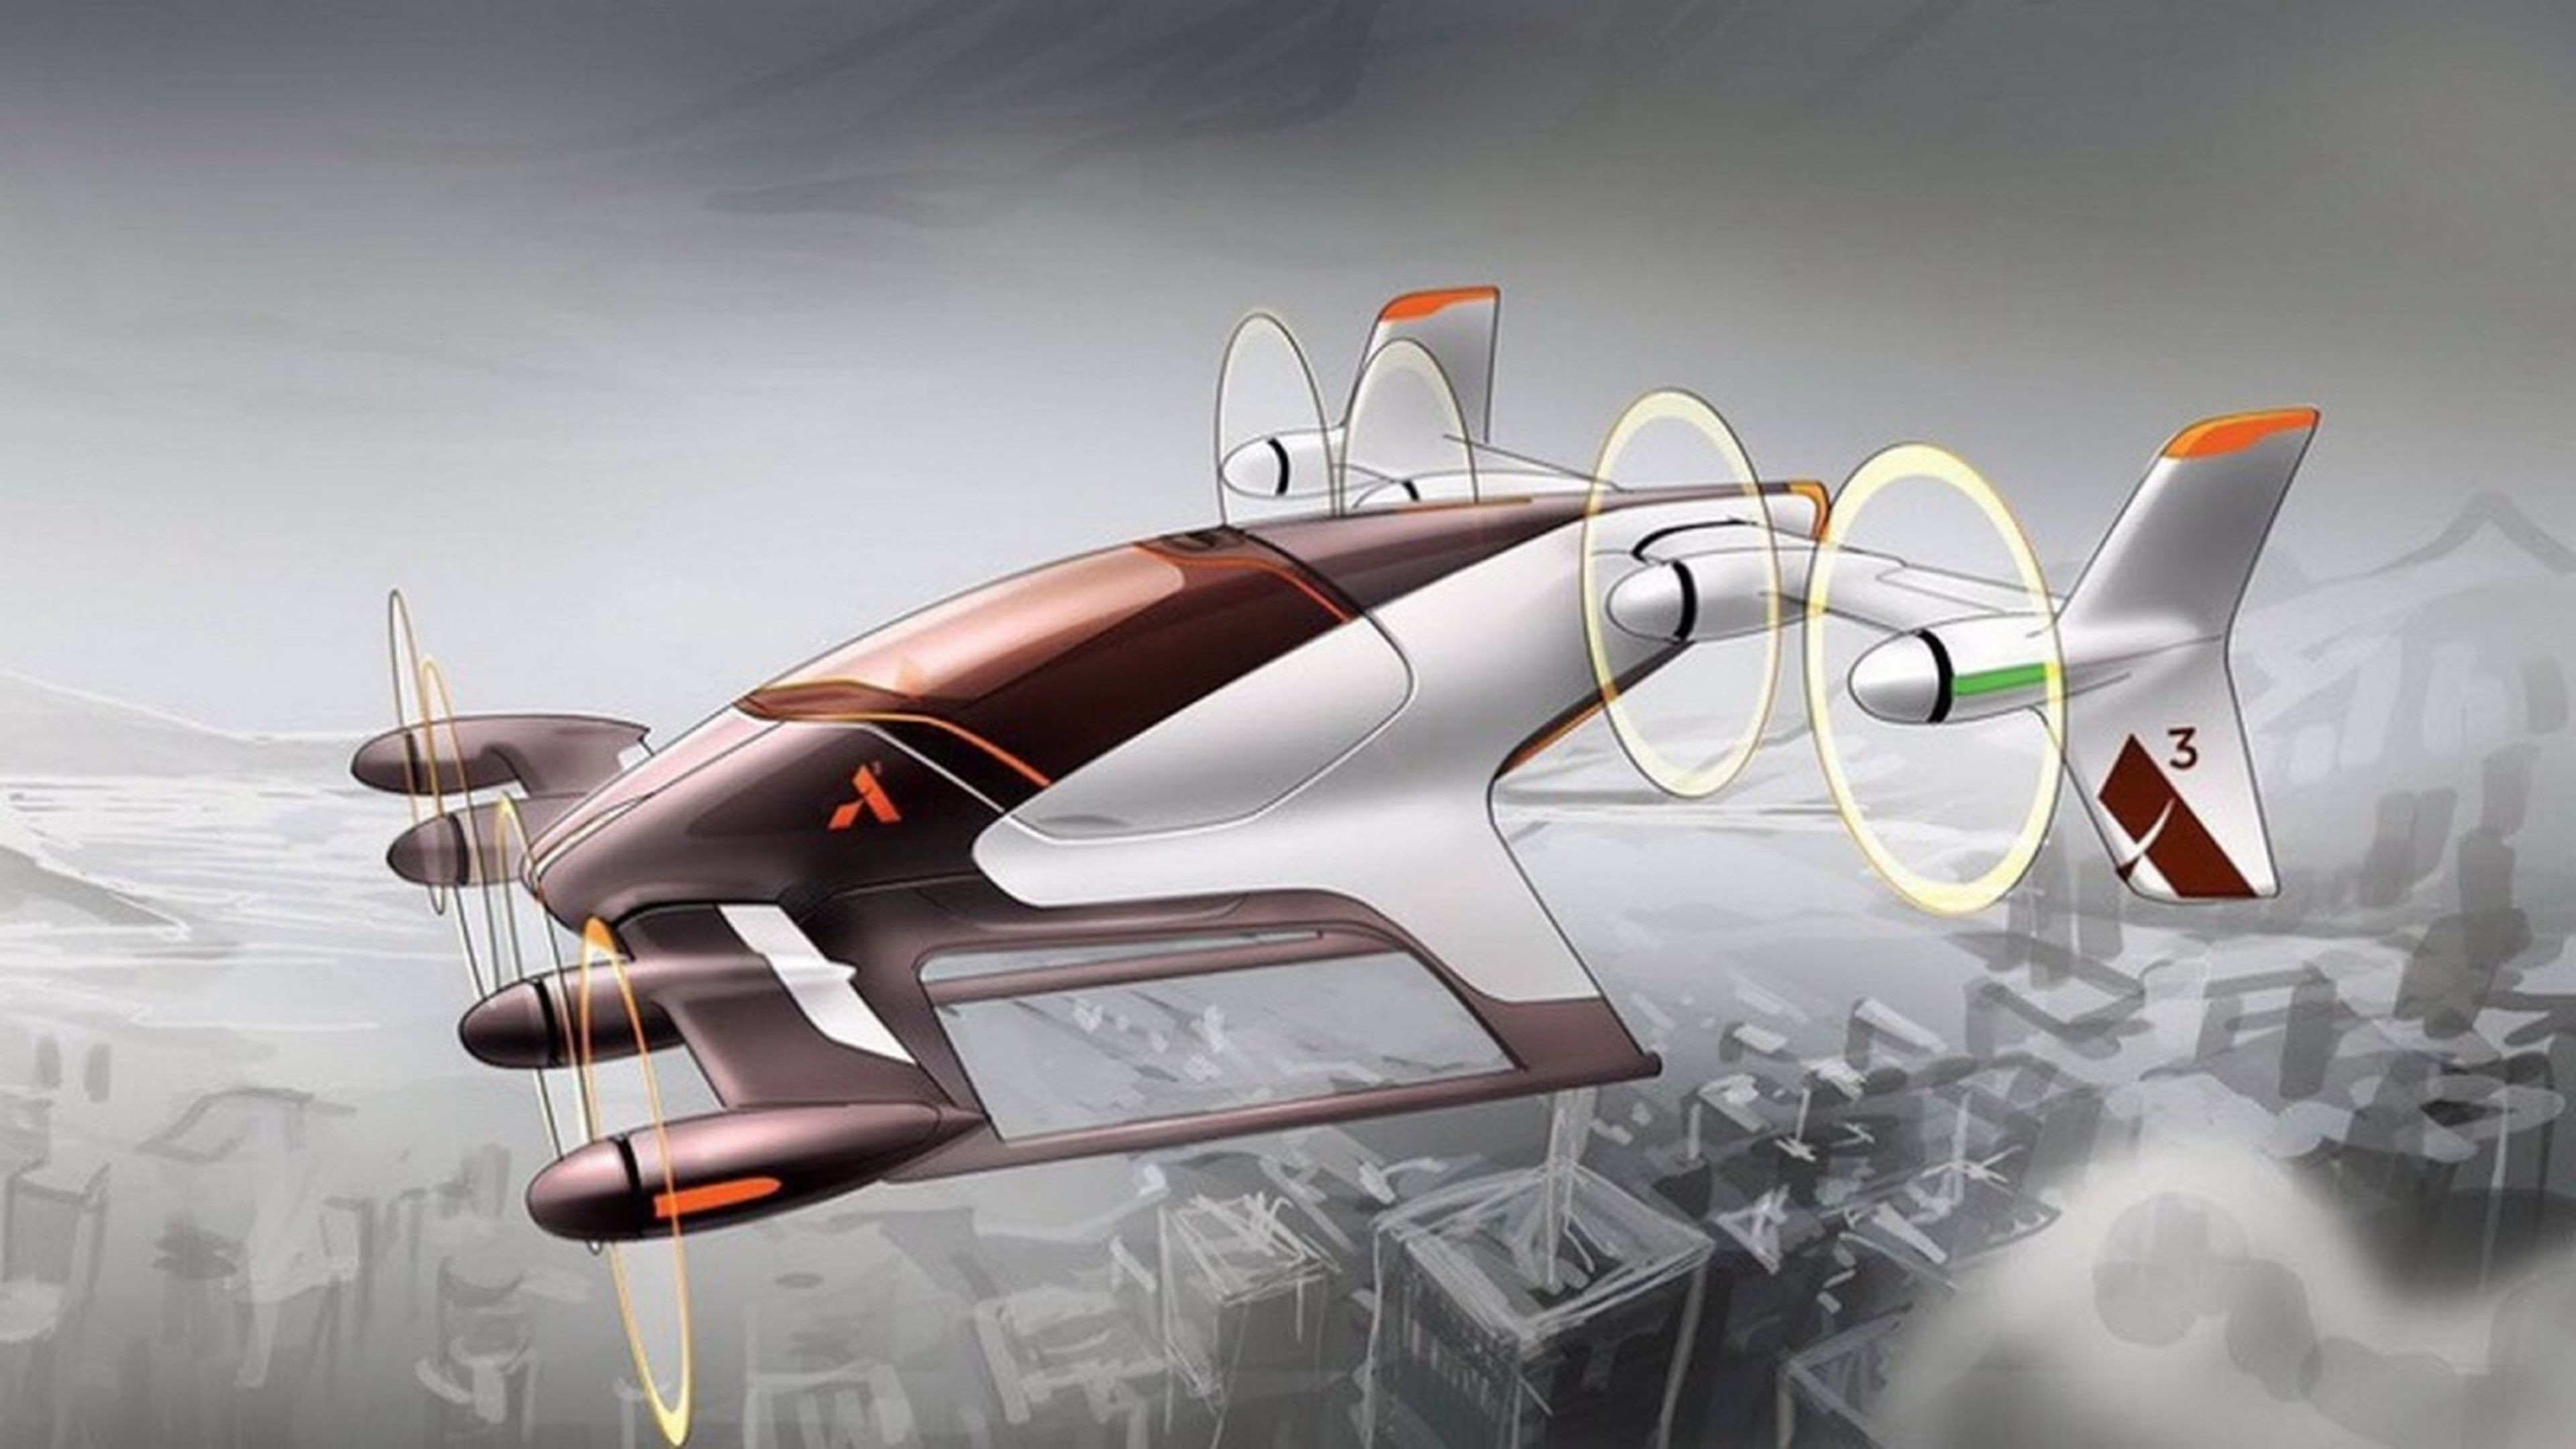 Airbus prototipo coche volador